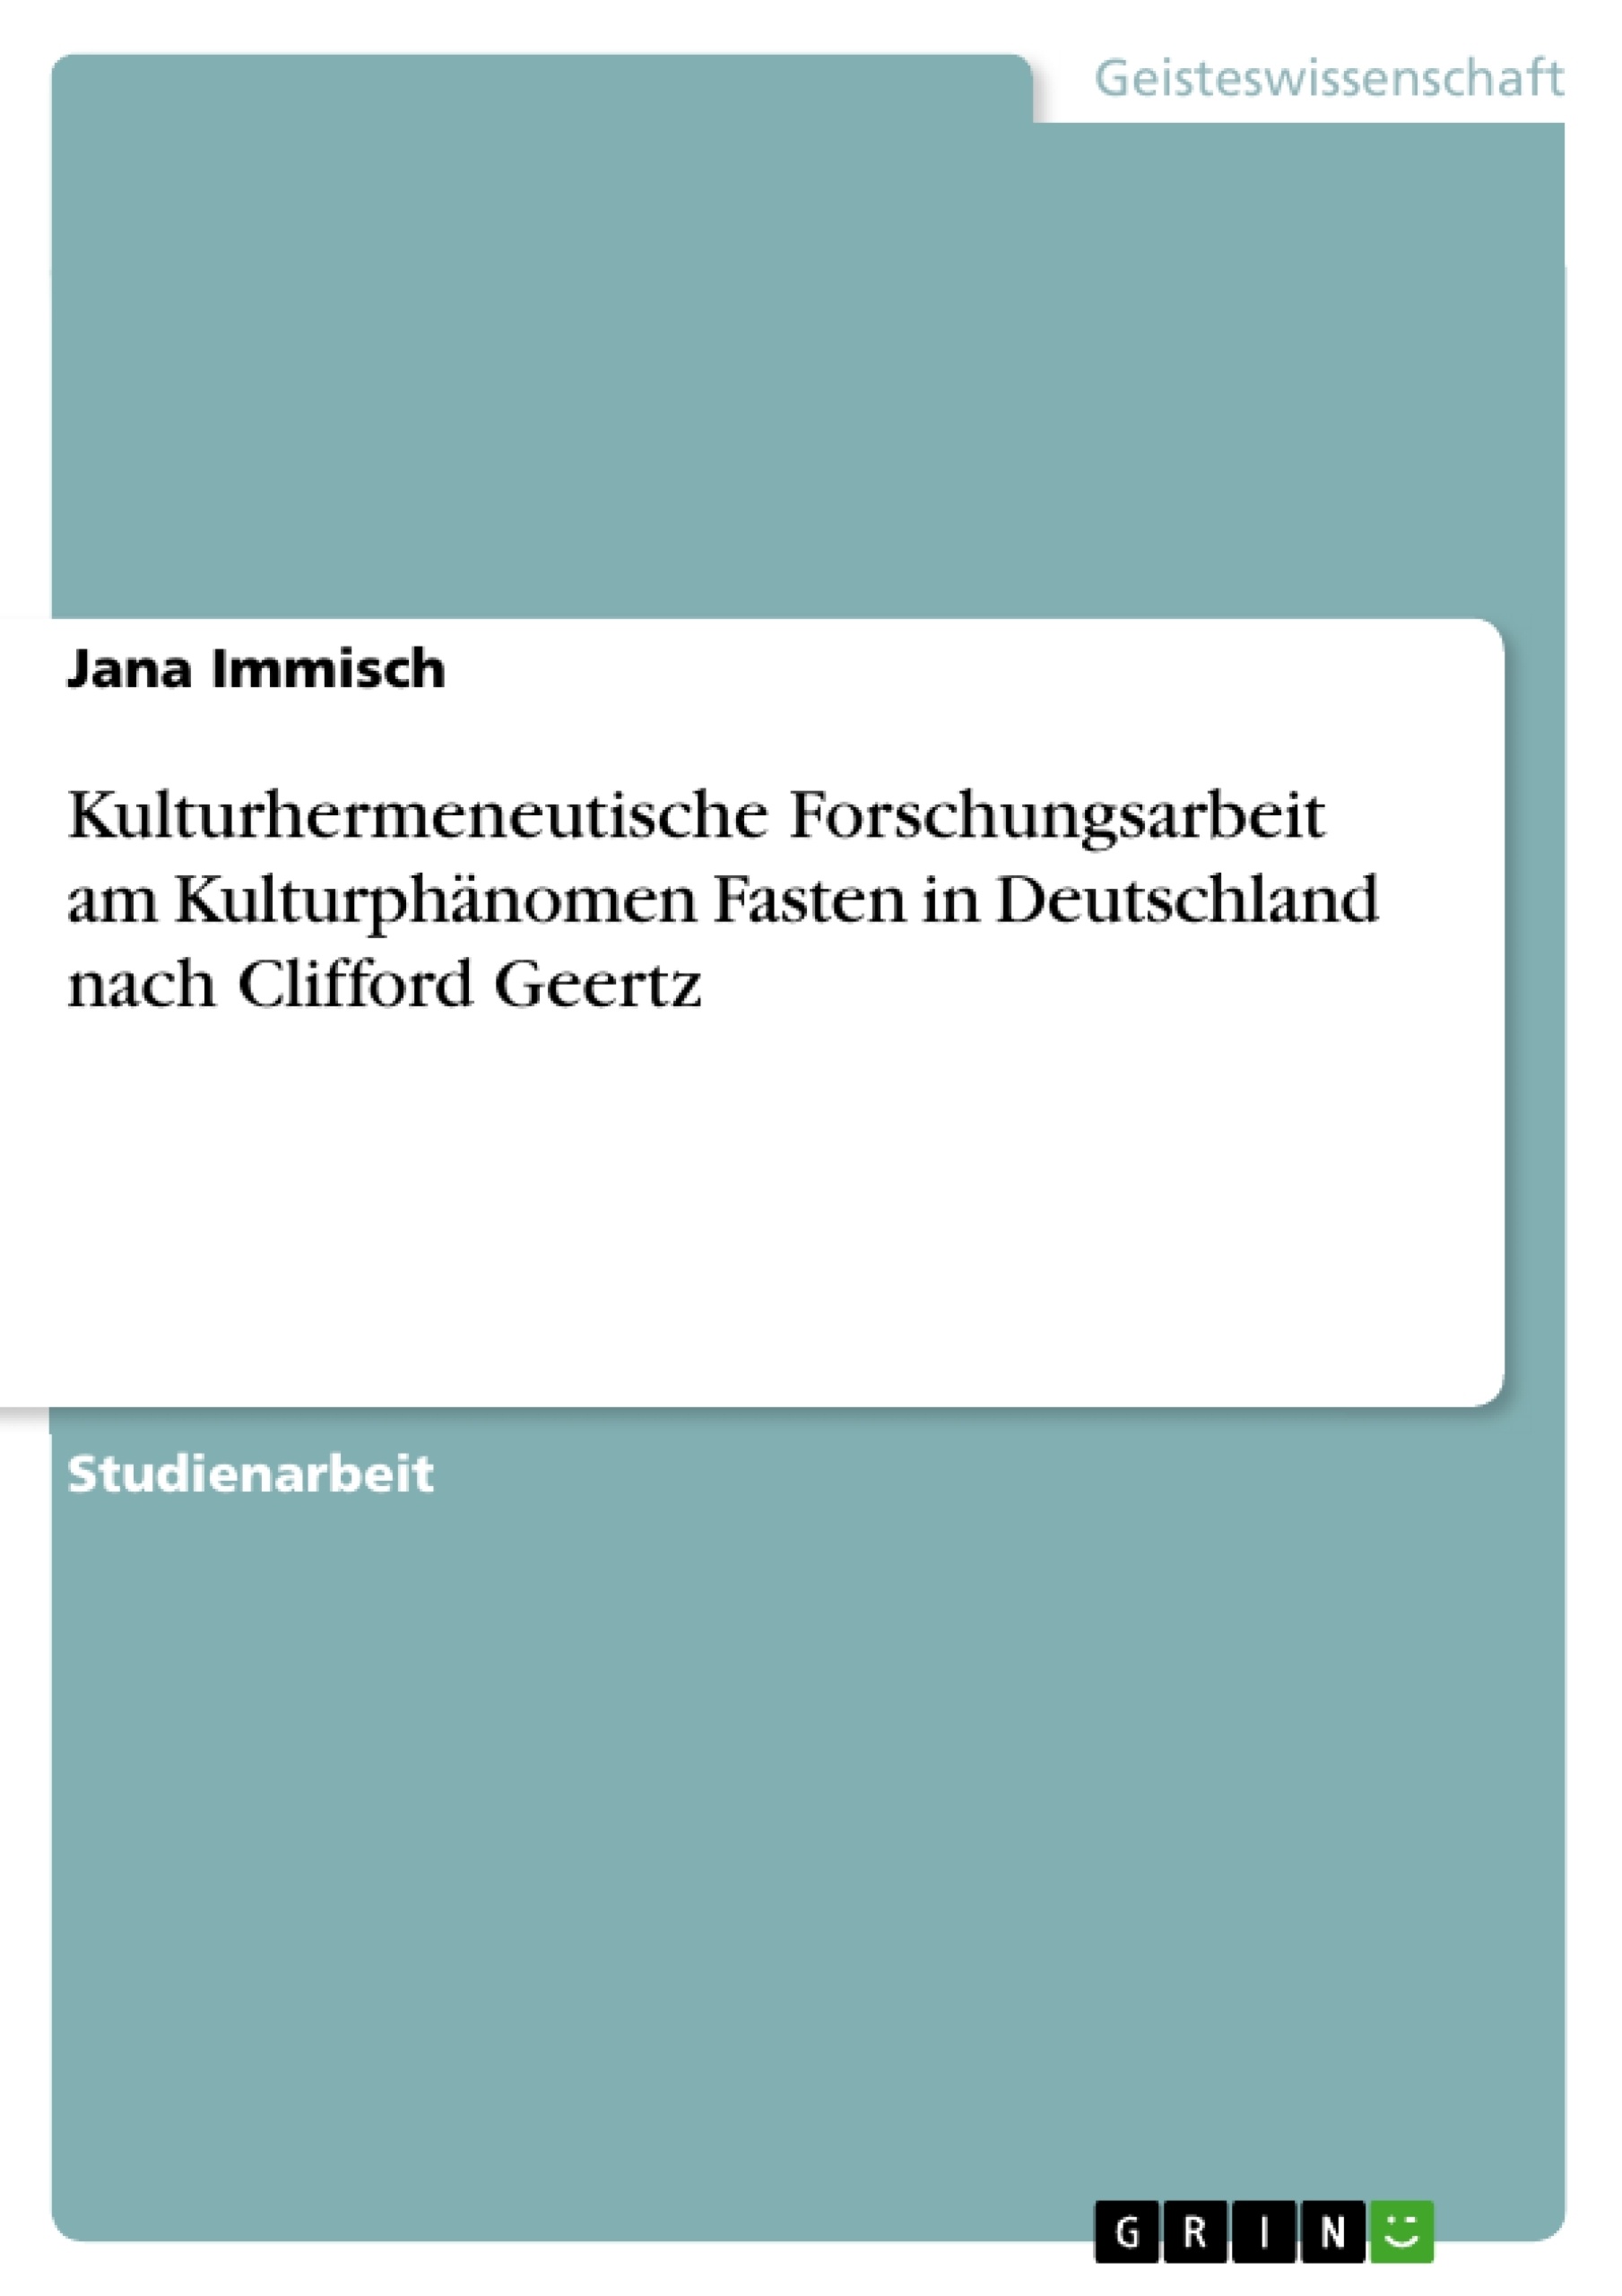 Title: Kulturhermeneutische Forschungsarbeit am Kulturphänomen Fasten in Deutschland nach Clifford Geertz